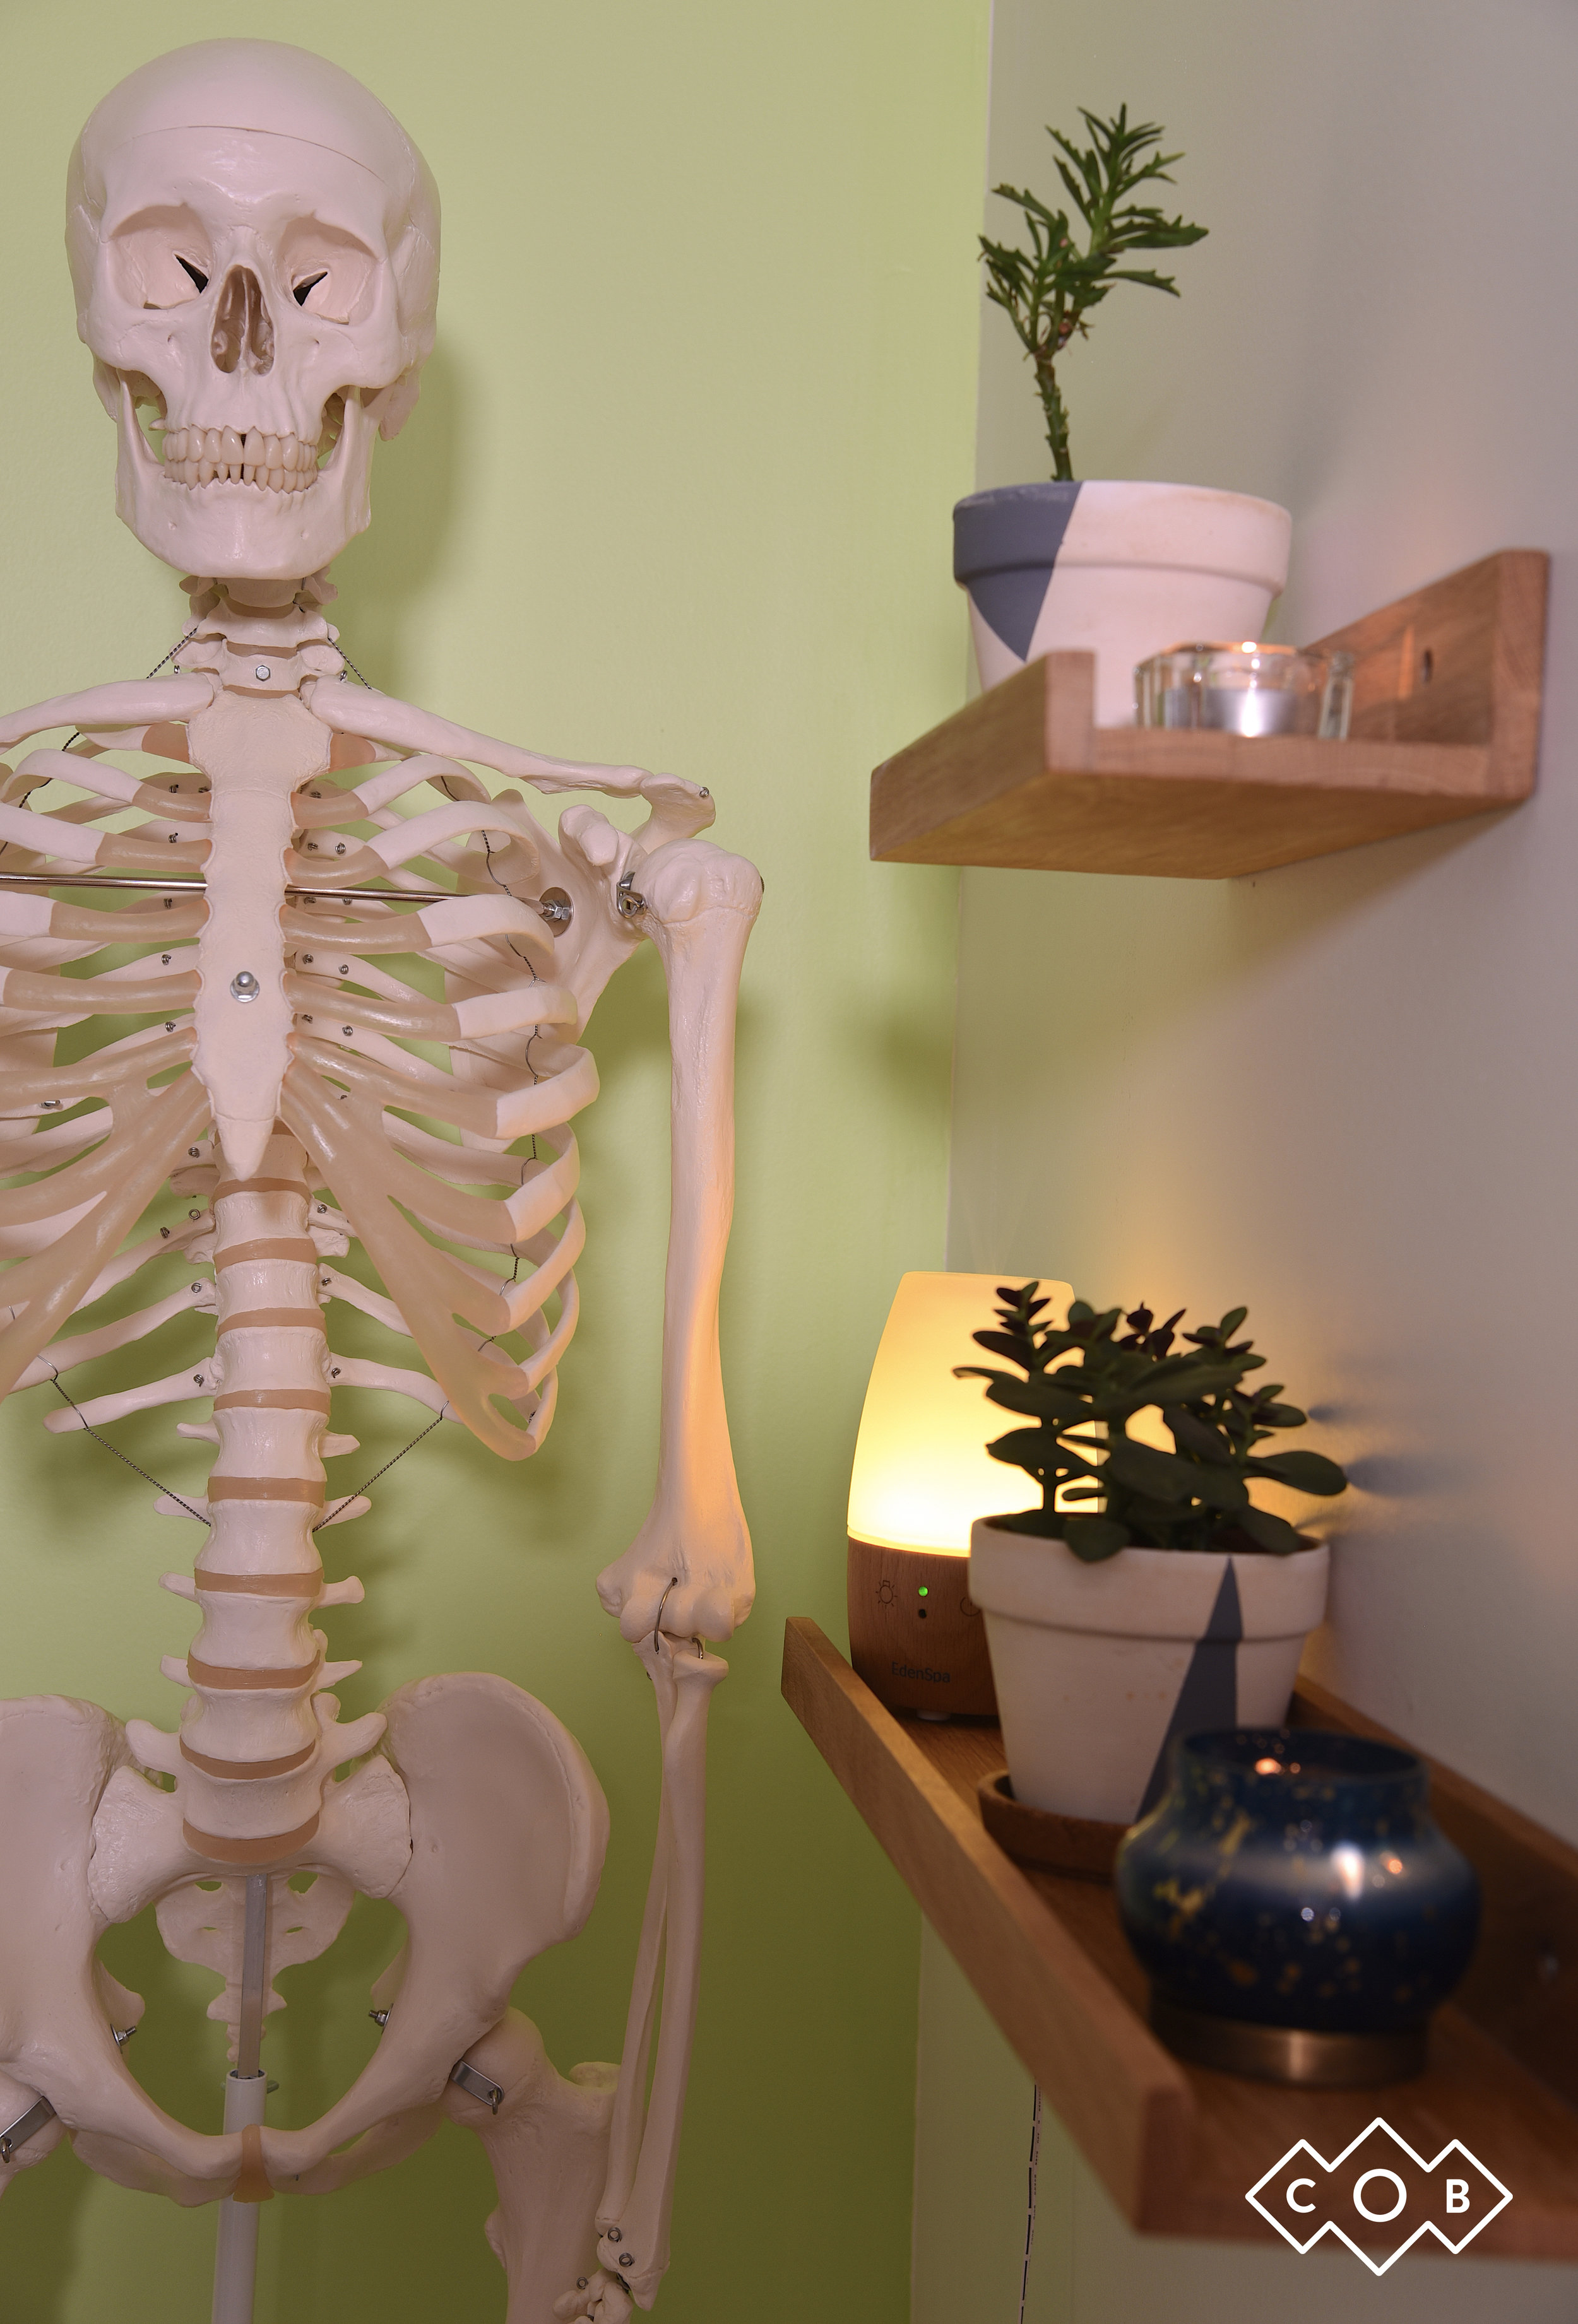 Centre-osteopathie-berri-squelette-salle1.jpg